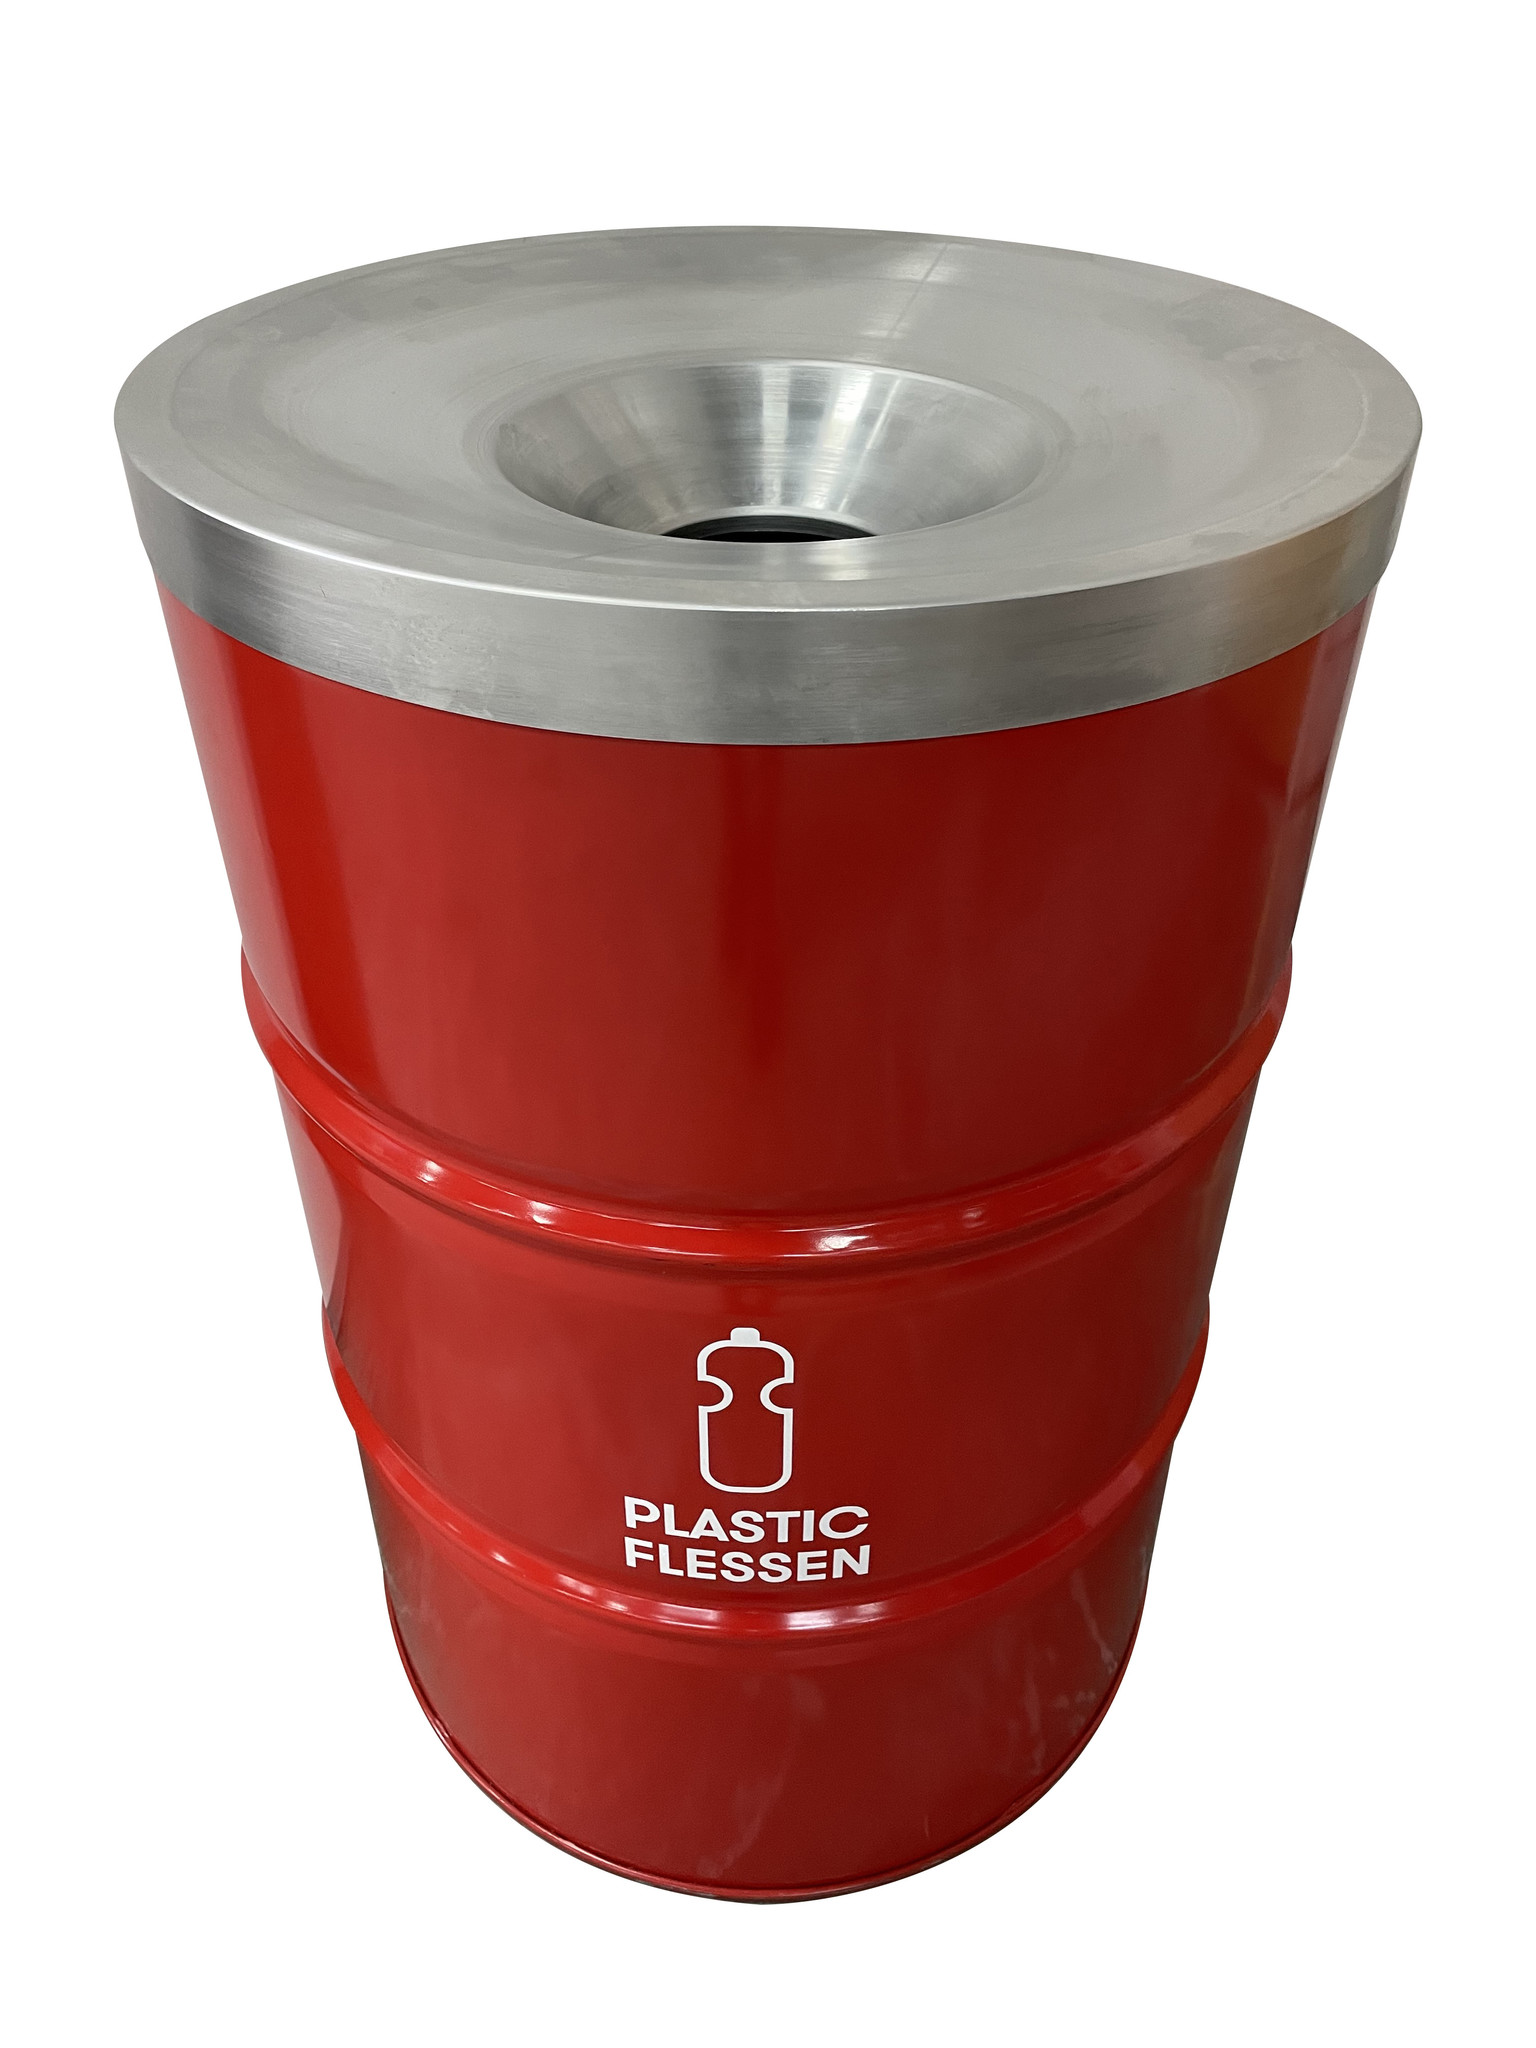 Verschrikkelijk ingenieur Schaduw BinBin Flame Red 200 Liter plastic (PET) flessen inzamel prullenbak -  BarrelKings